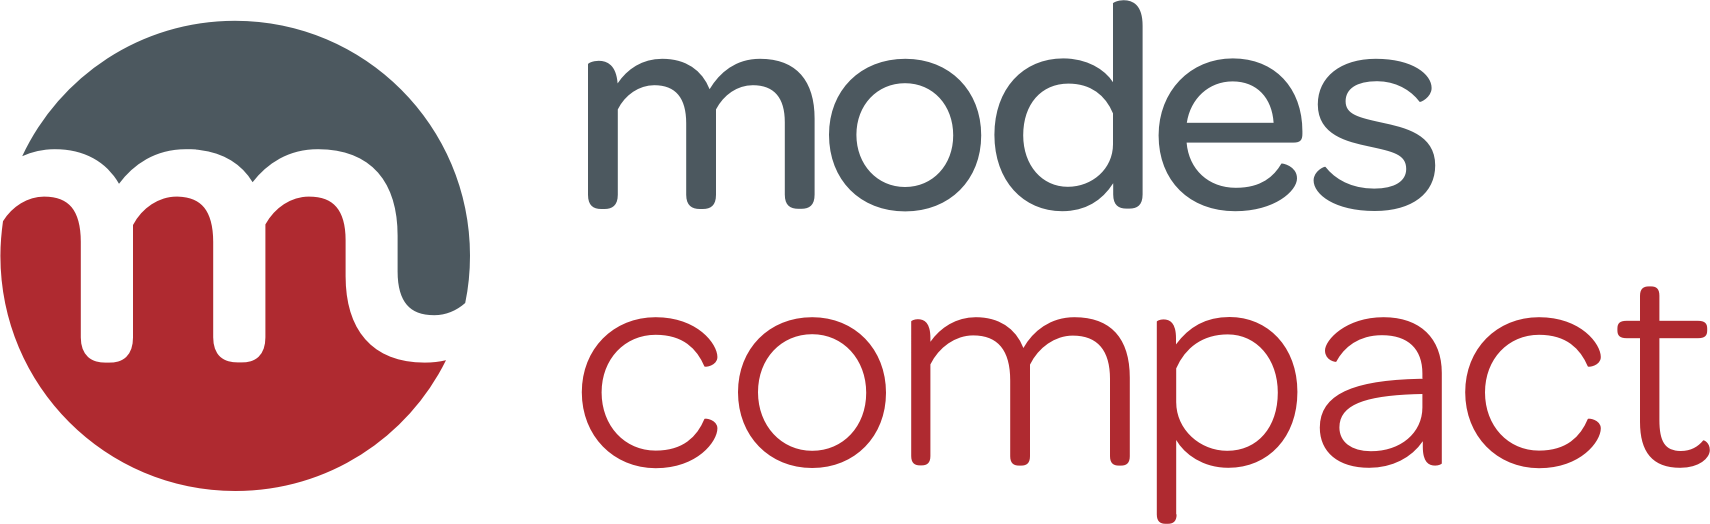 Modes Compact logo